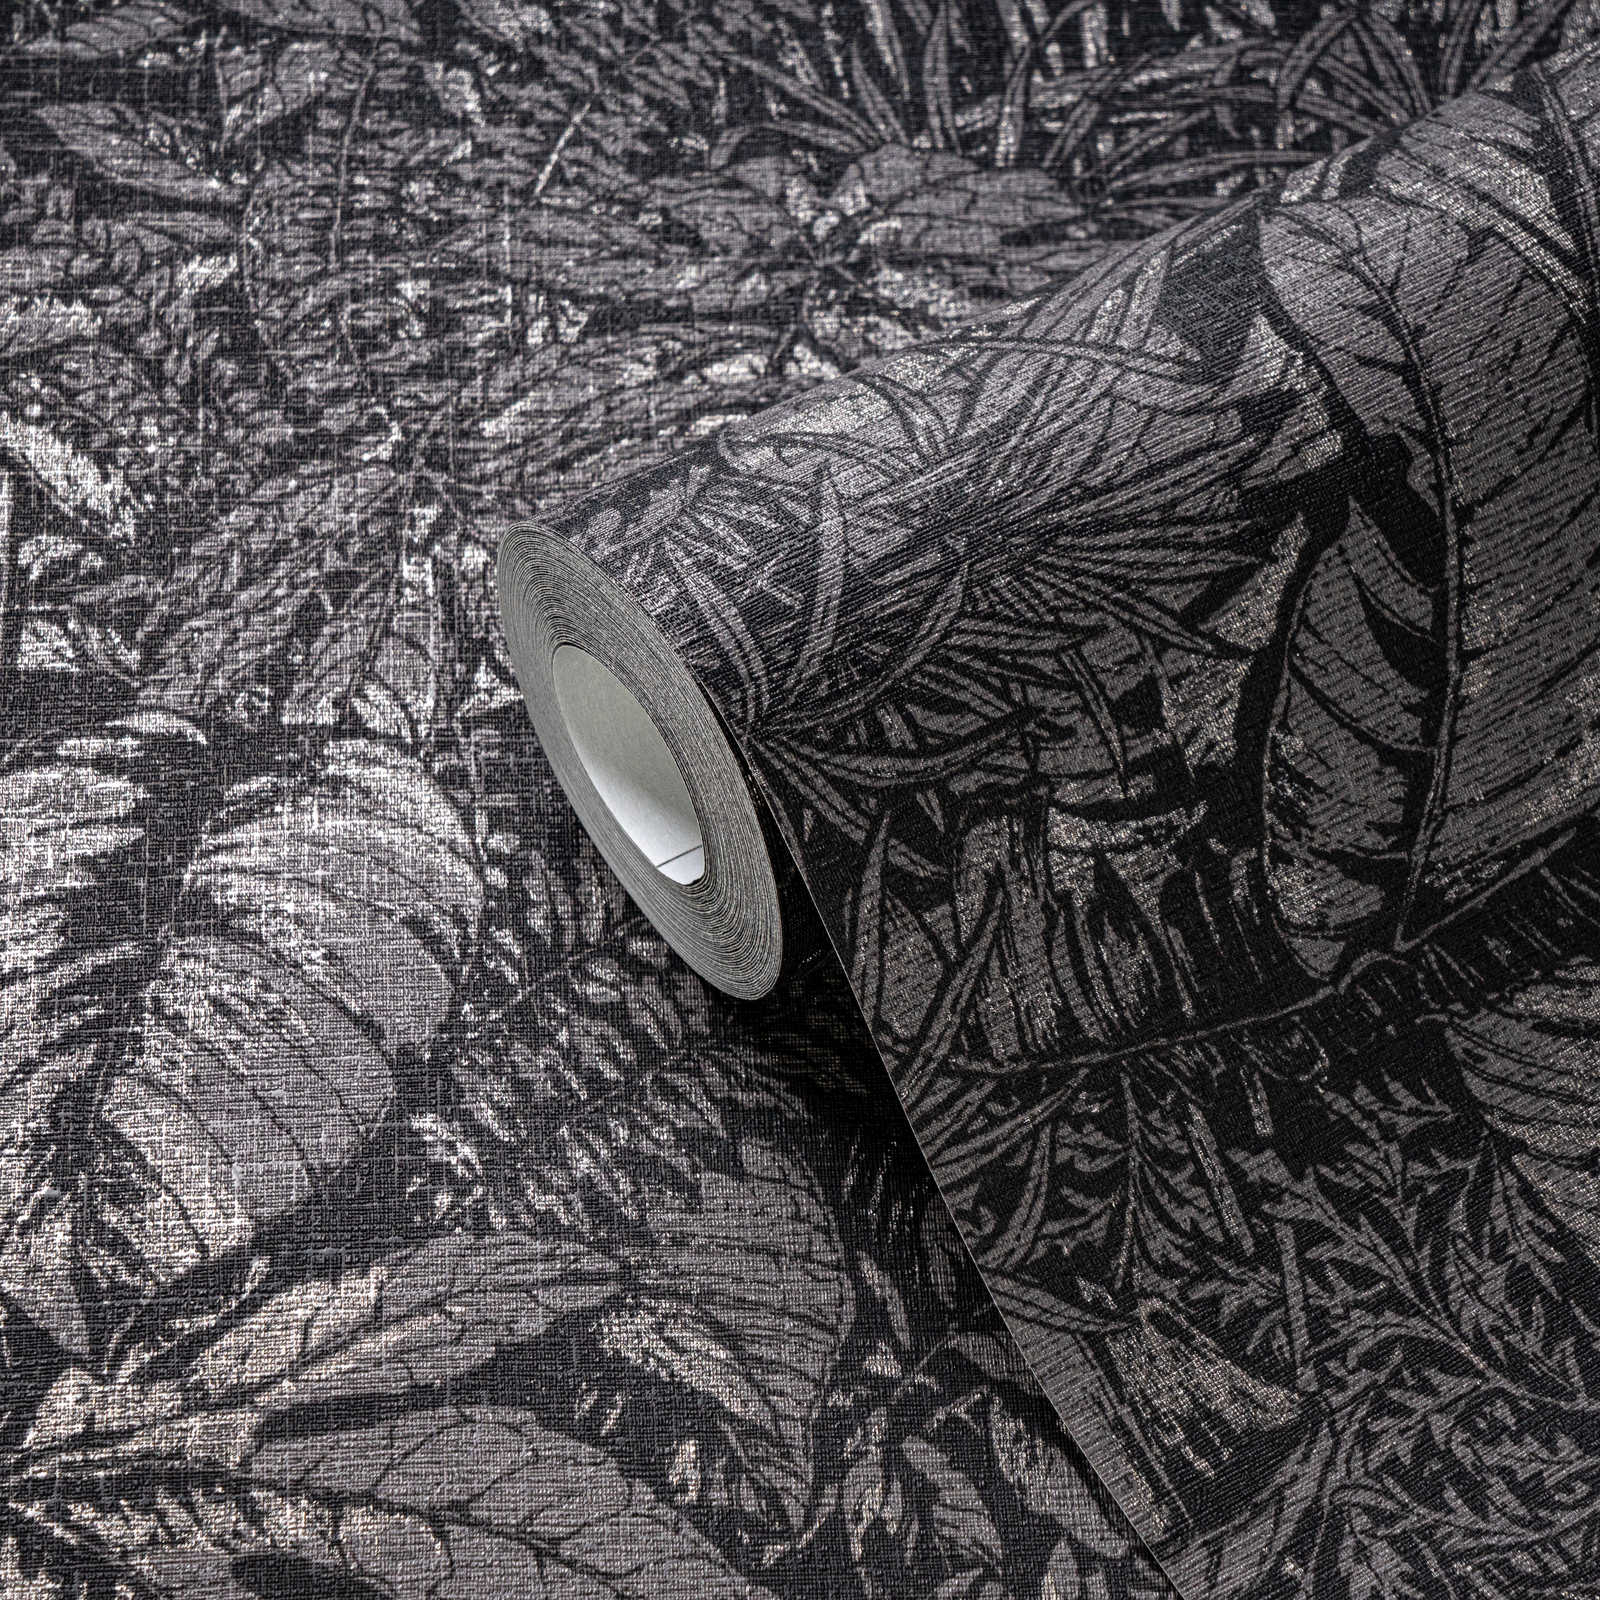             Gebloemd vliesbehang met junglepatroon - zwart, grijs, zilver
        